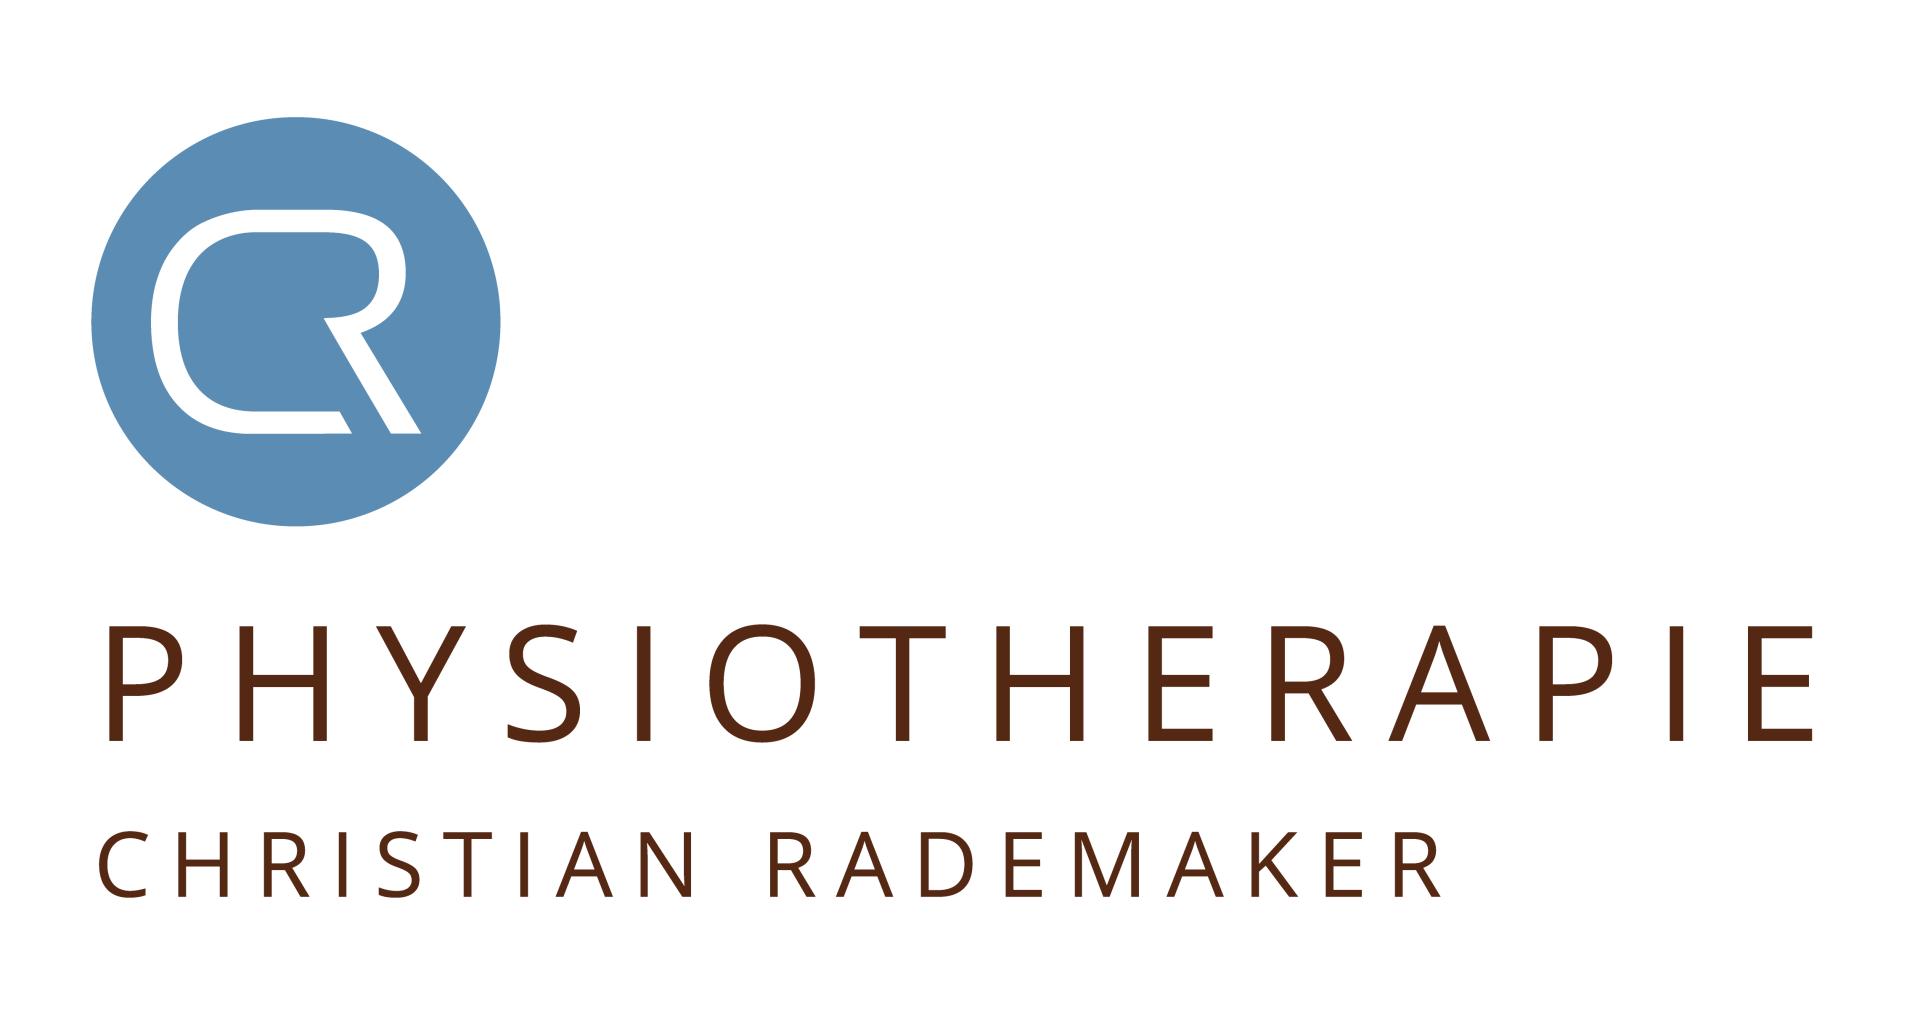 Logo Physiotherapie Christian Rademaker Aschendorf